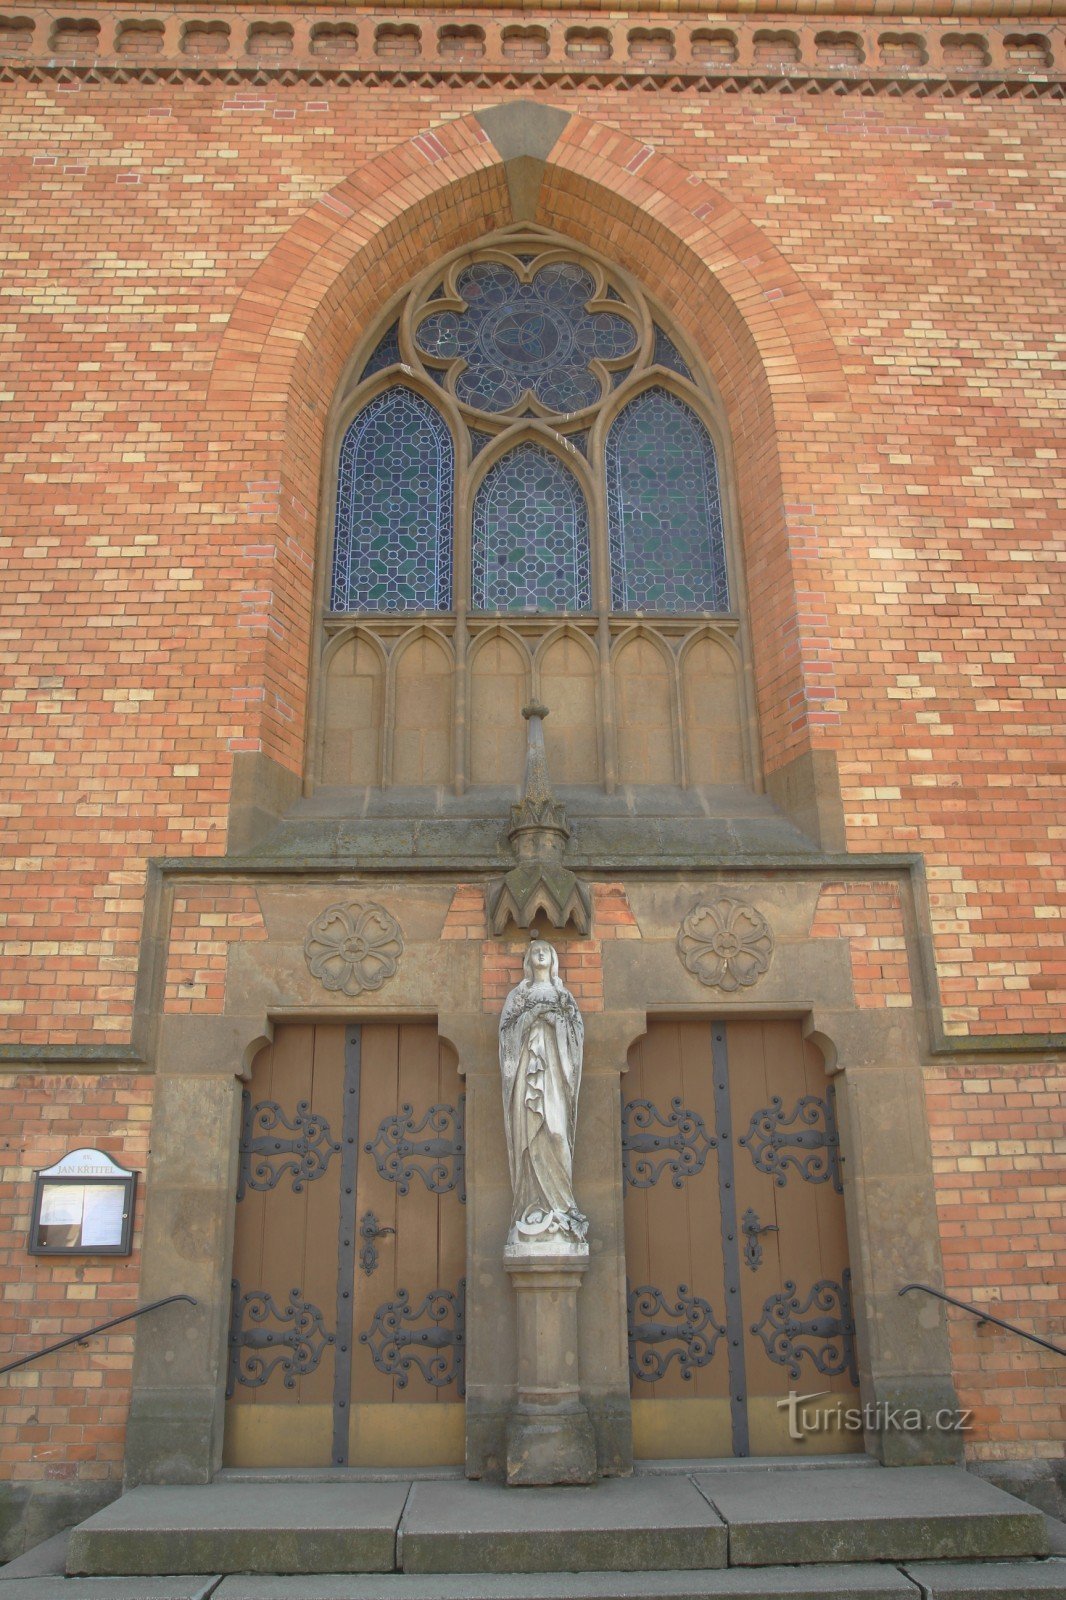 Detalle de la entrada principal a la iglesia